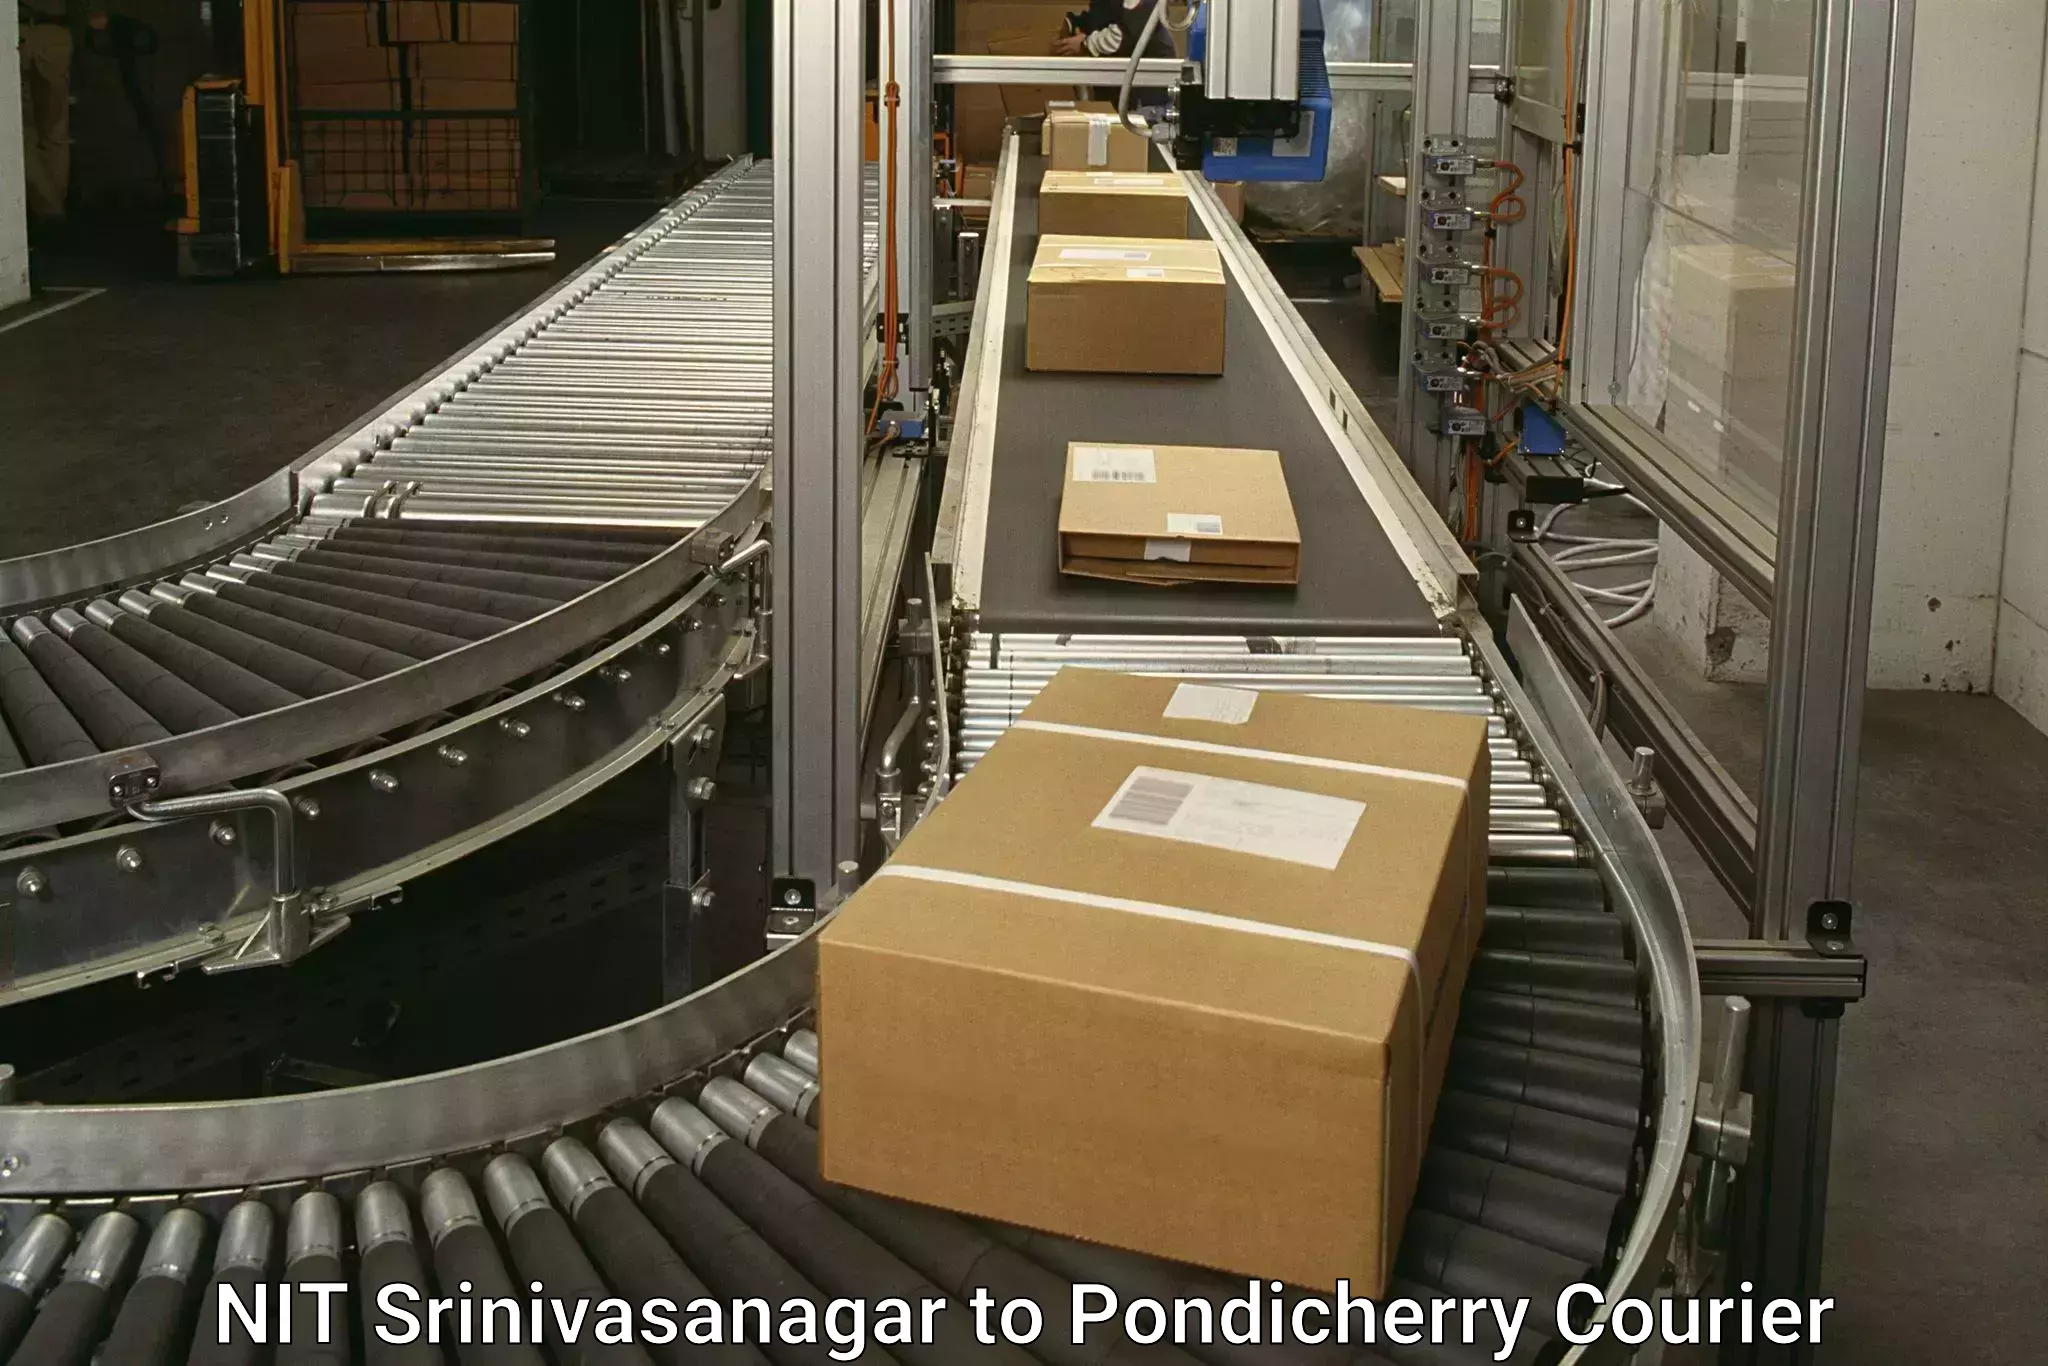 Business delivery service NIT Srinivasanagar to NIT Puducherry